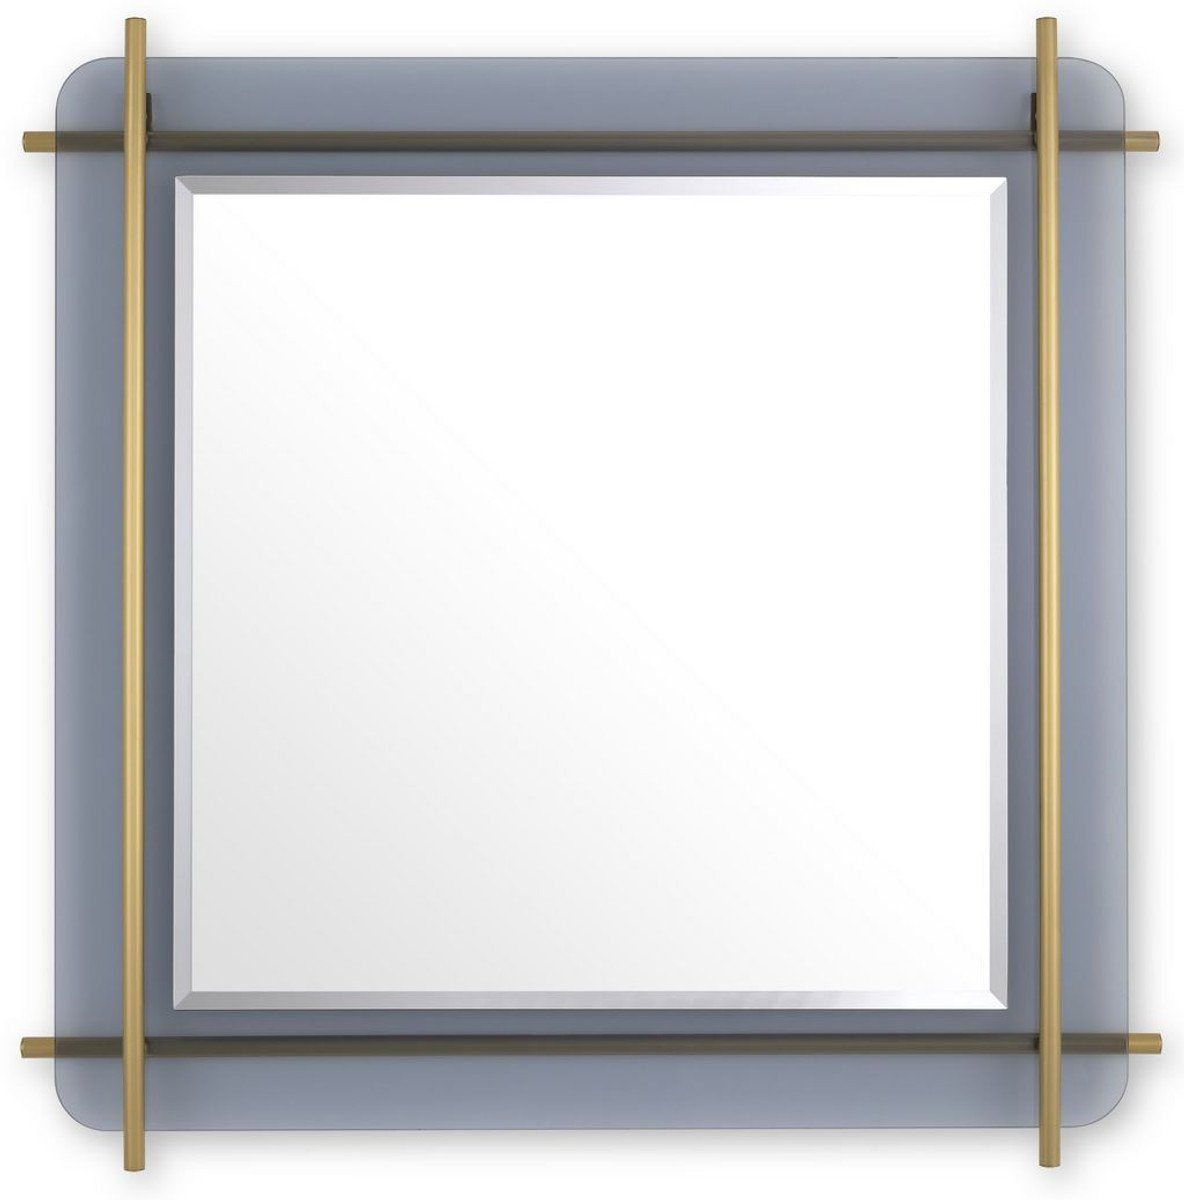 Casa Padrino Spiegel Luxus Spiegel Messingfarben / Grau 85,5 x 5 x H. 85,5 cm - Quadratischer Wandspiegel mit grau getöntem Glasrand und Edelstahl Stangen - Luxus Kollektion